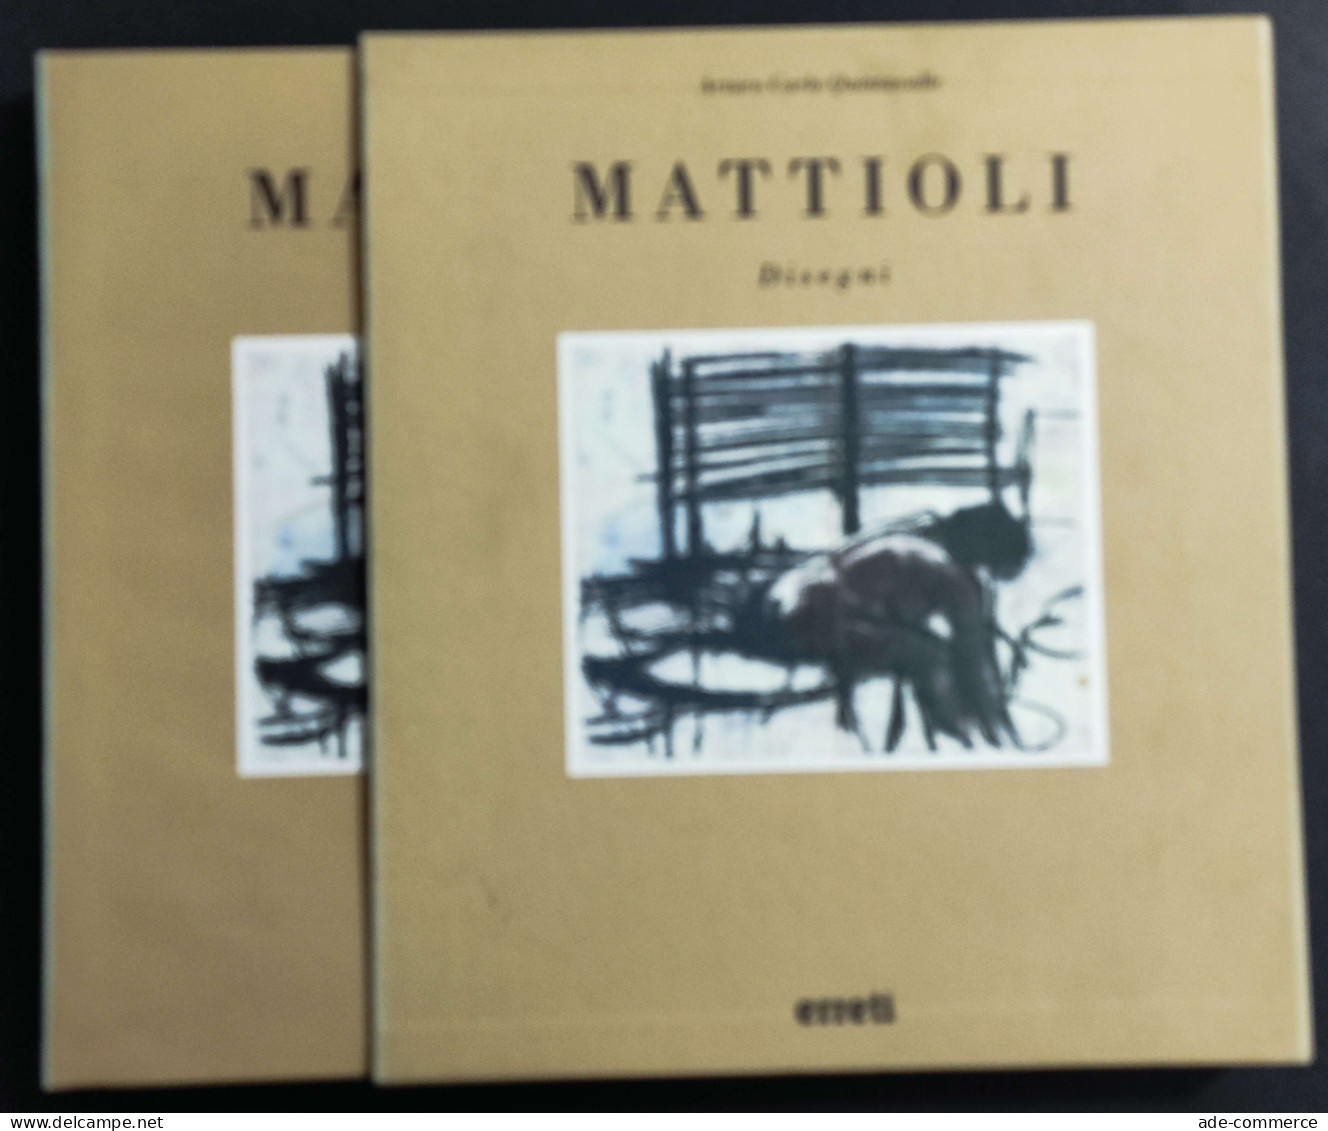 Mattioli - Disegni - A. C. Quintavalle - Ed. Electa - 1993 - Arts, Antiquity